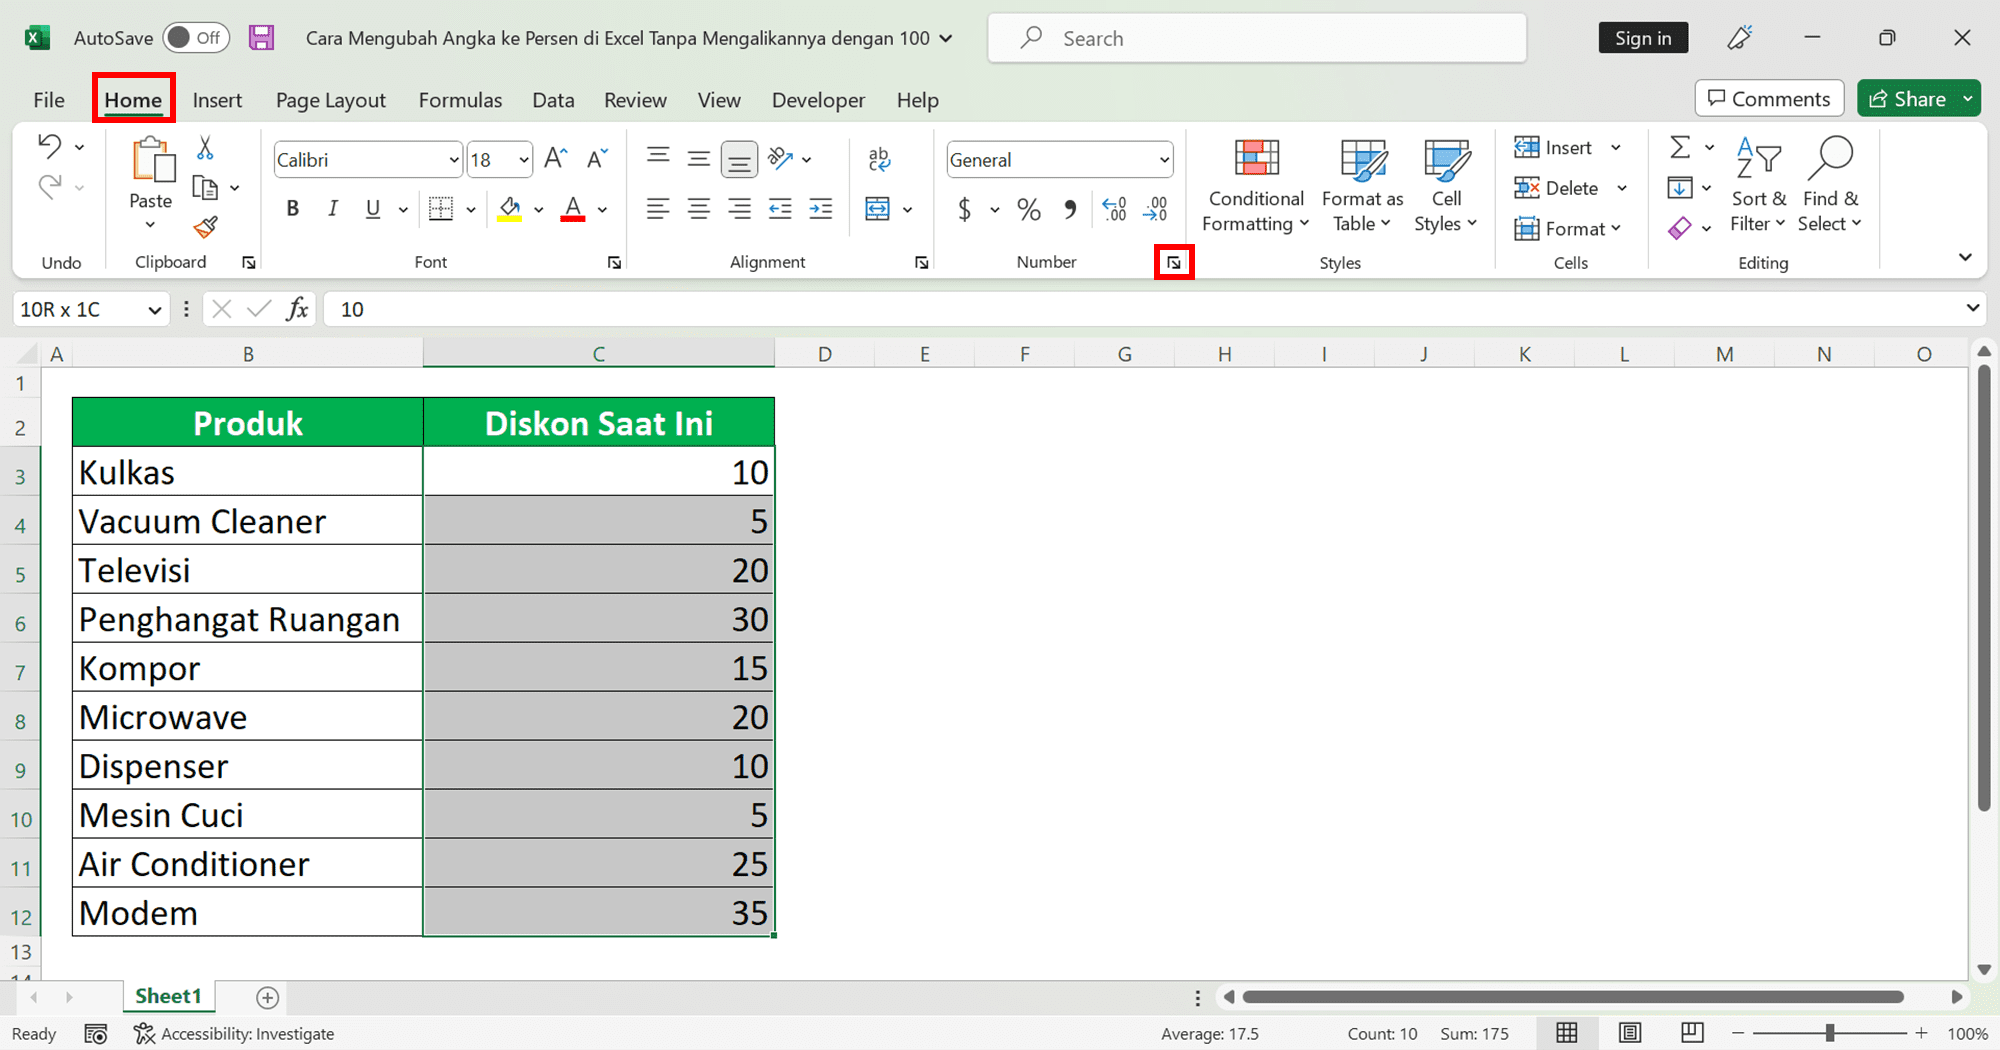 Cara Mengubah Angka ke Persen di Excel Tanpa Mengalikannya dengan 100 - Screenshot Cara Mengubah Angka ke Persen di Excel Tanpa Mengalikannya dengan 100 dengan Cara Format Custom, Langkah 2